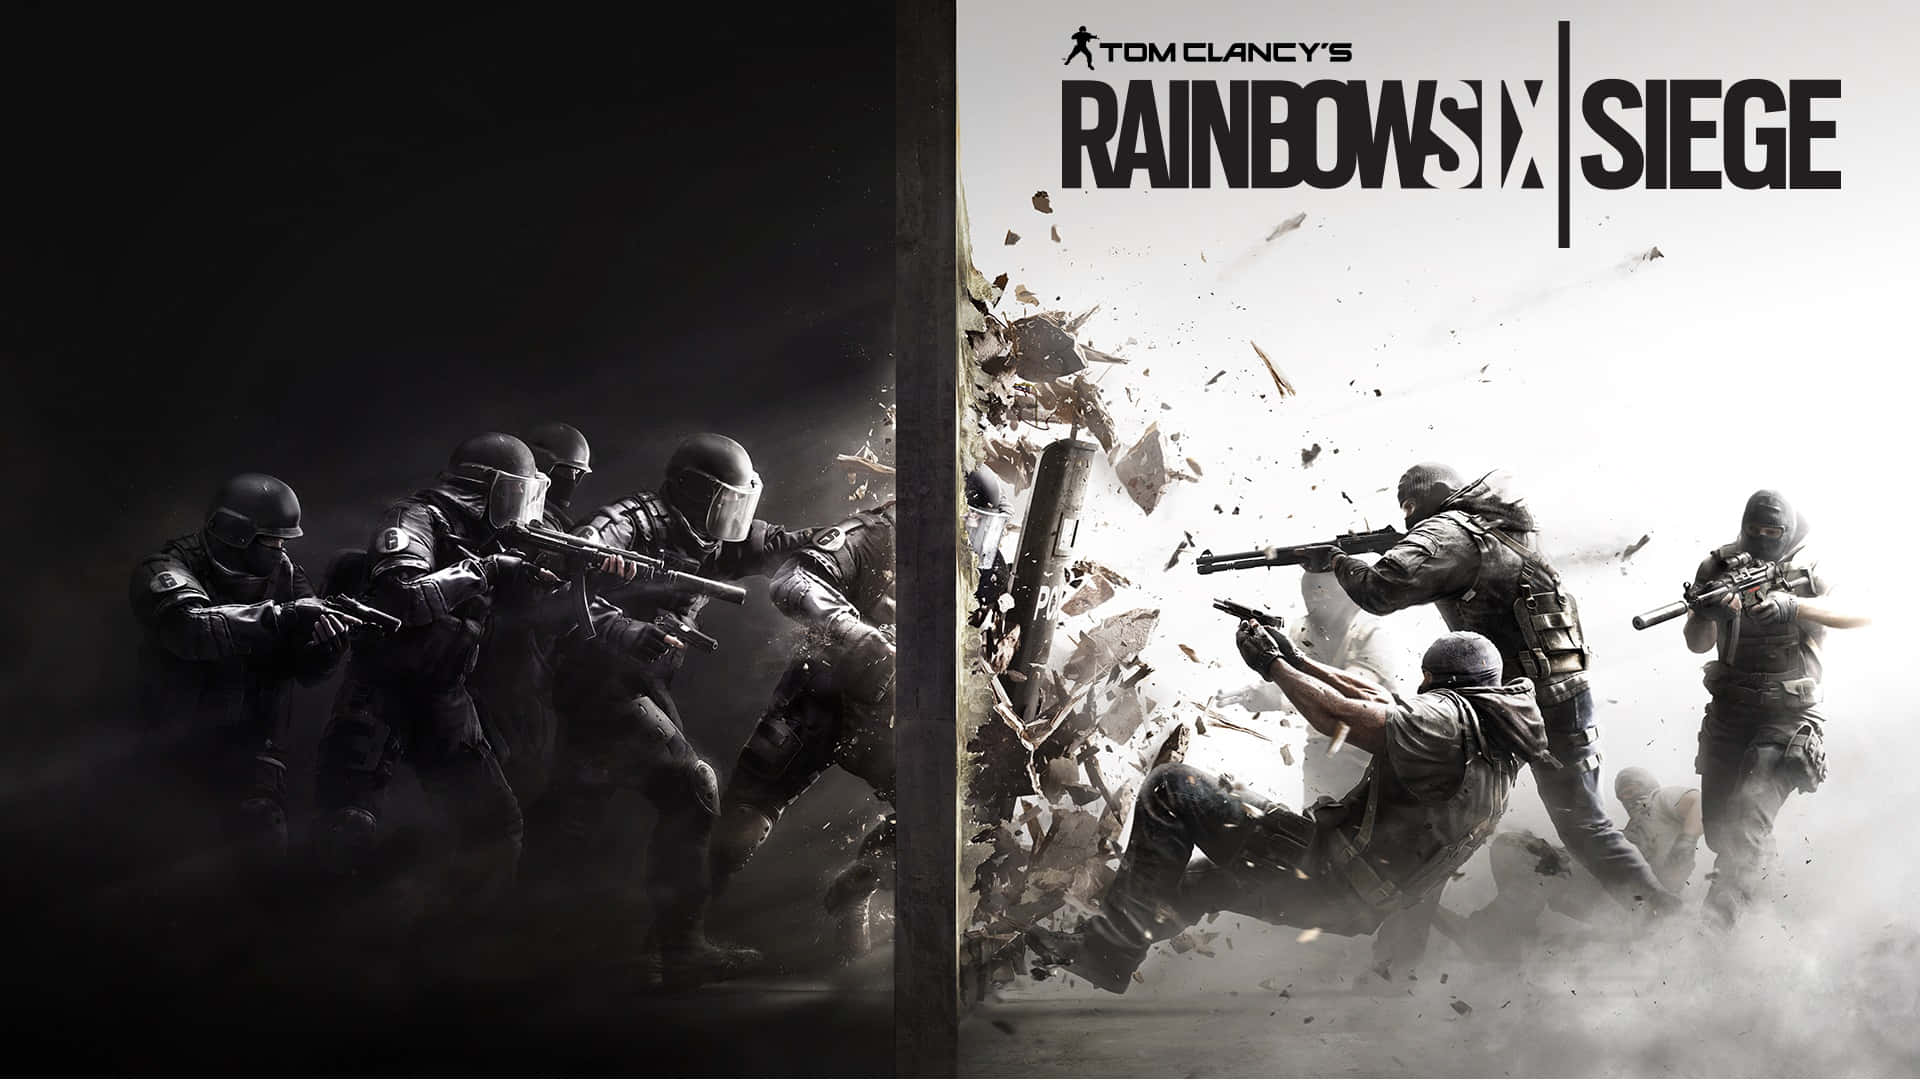 Elite Rainbow Six Siege Operators in action Wallpaper